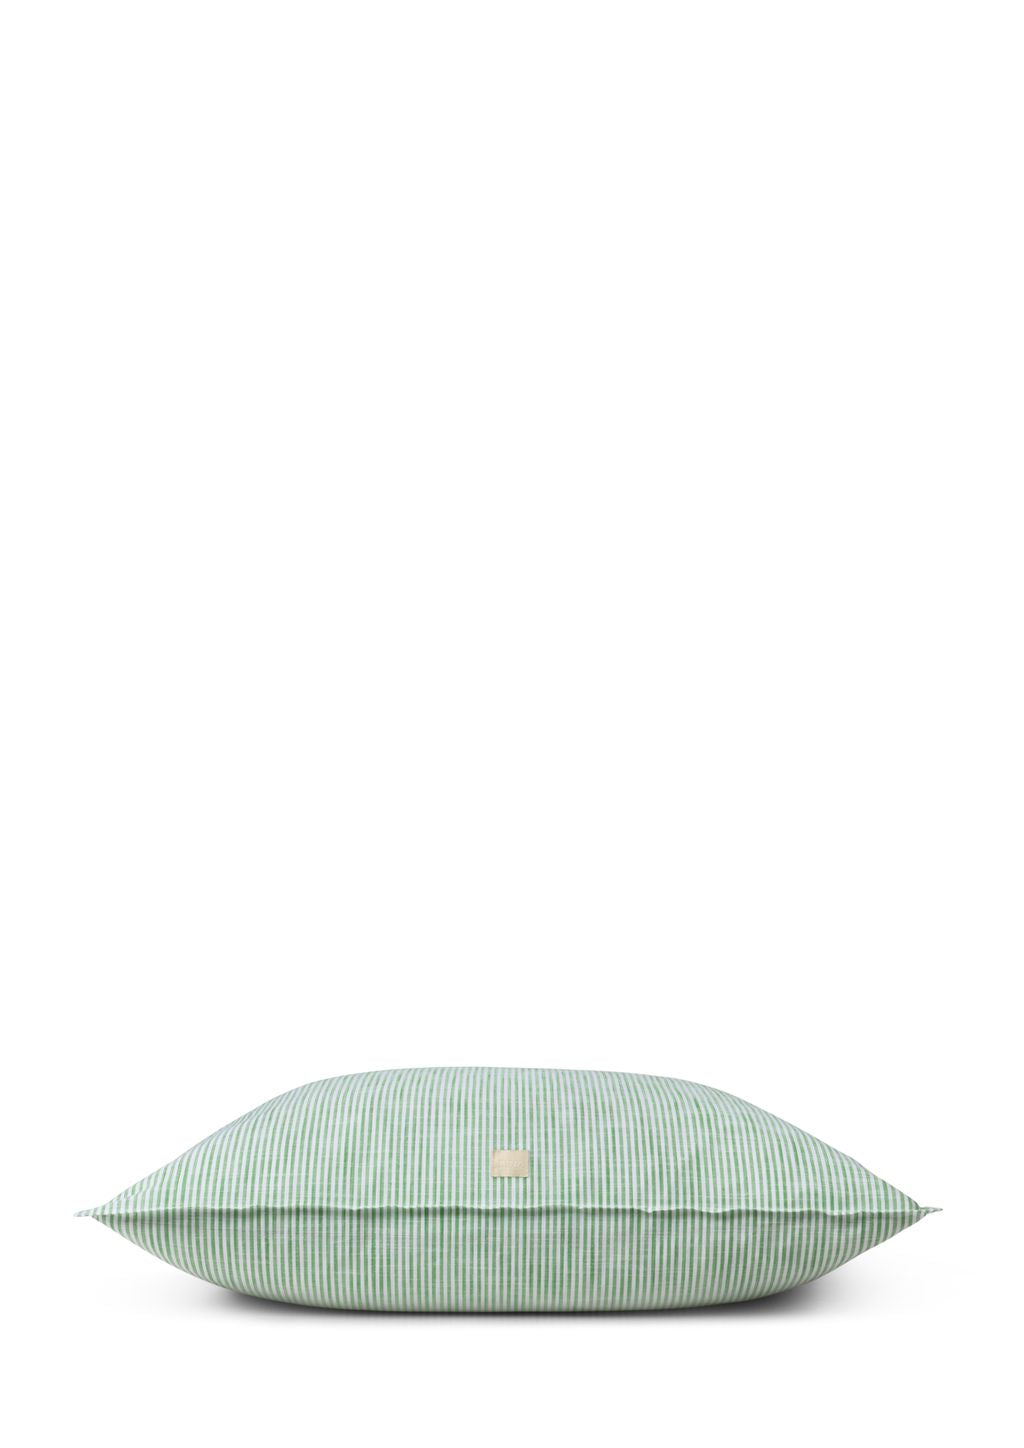 Copertina di cuscino di linee monocromatiche di Juna 63 x60 cm, verde/bianco